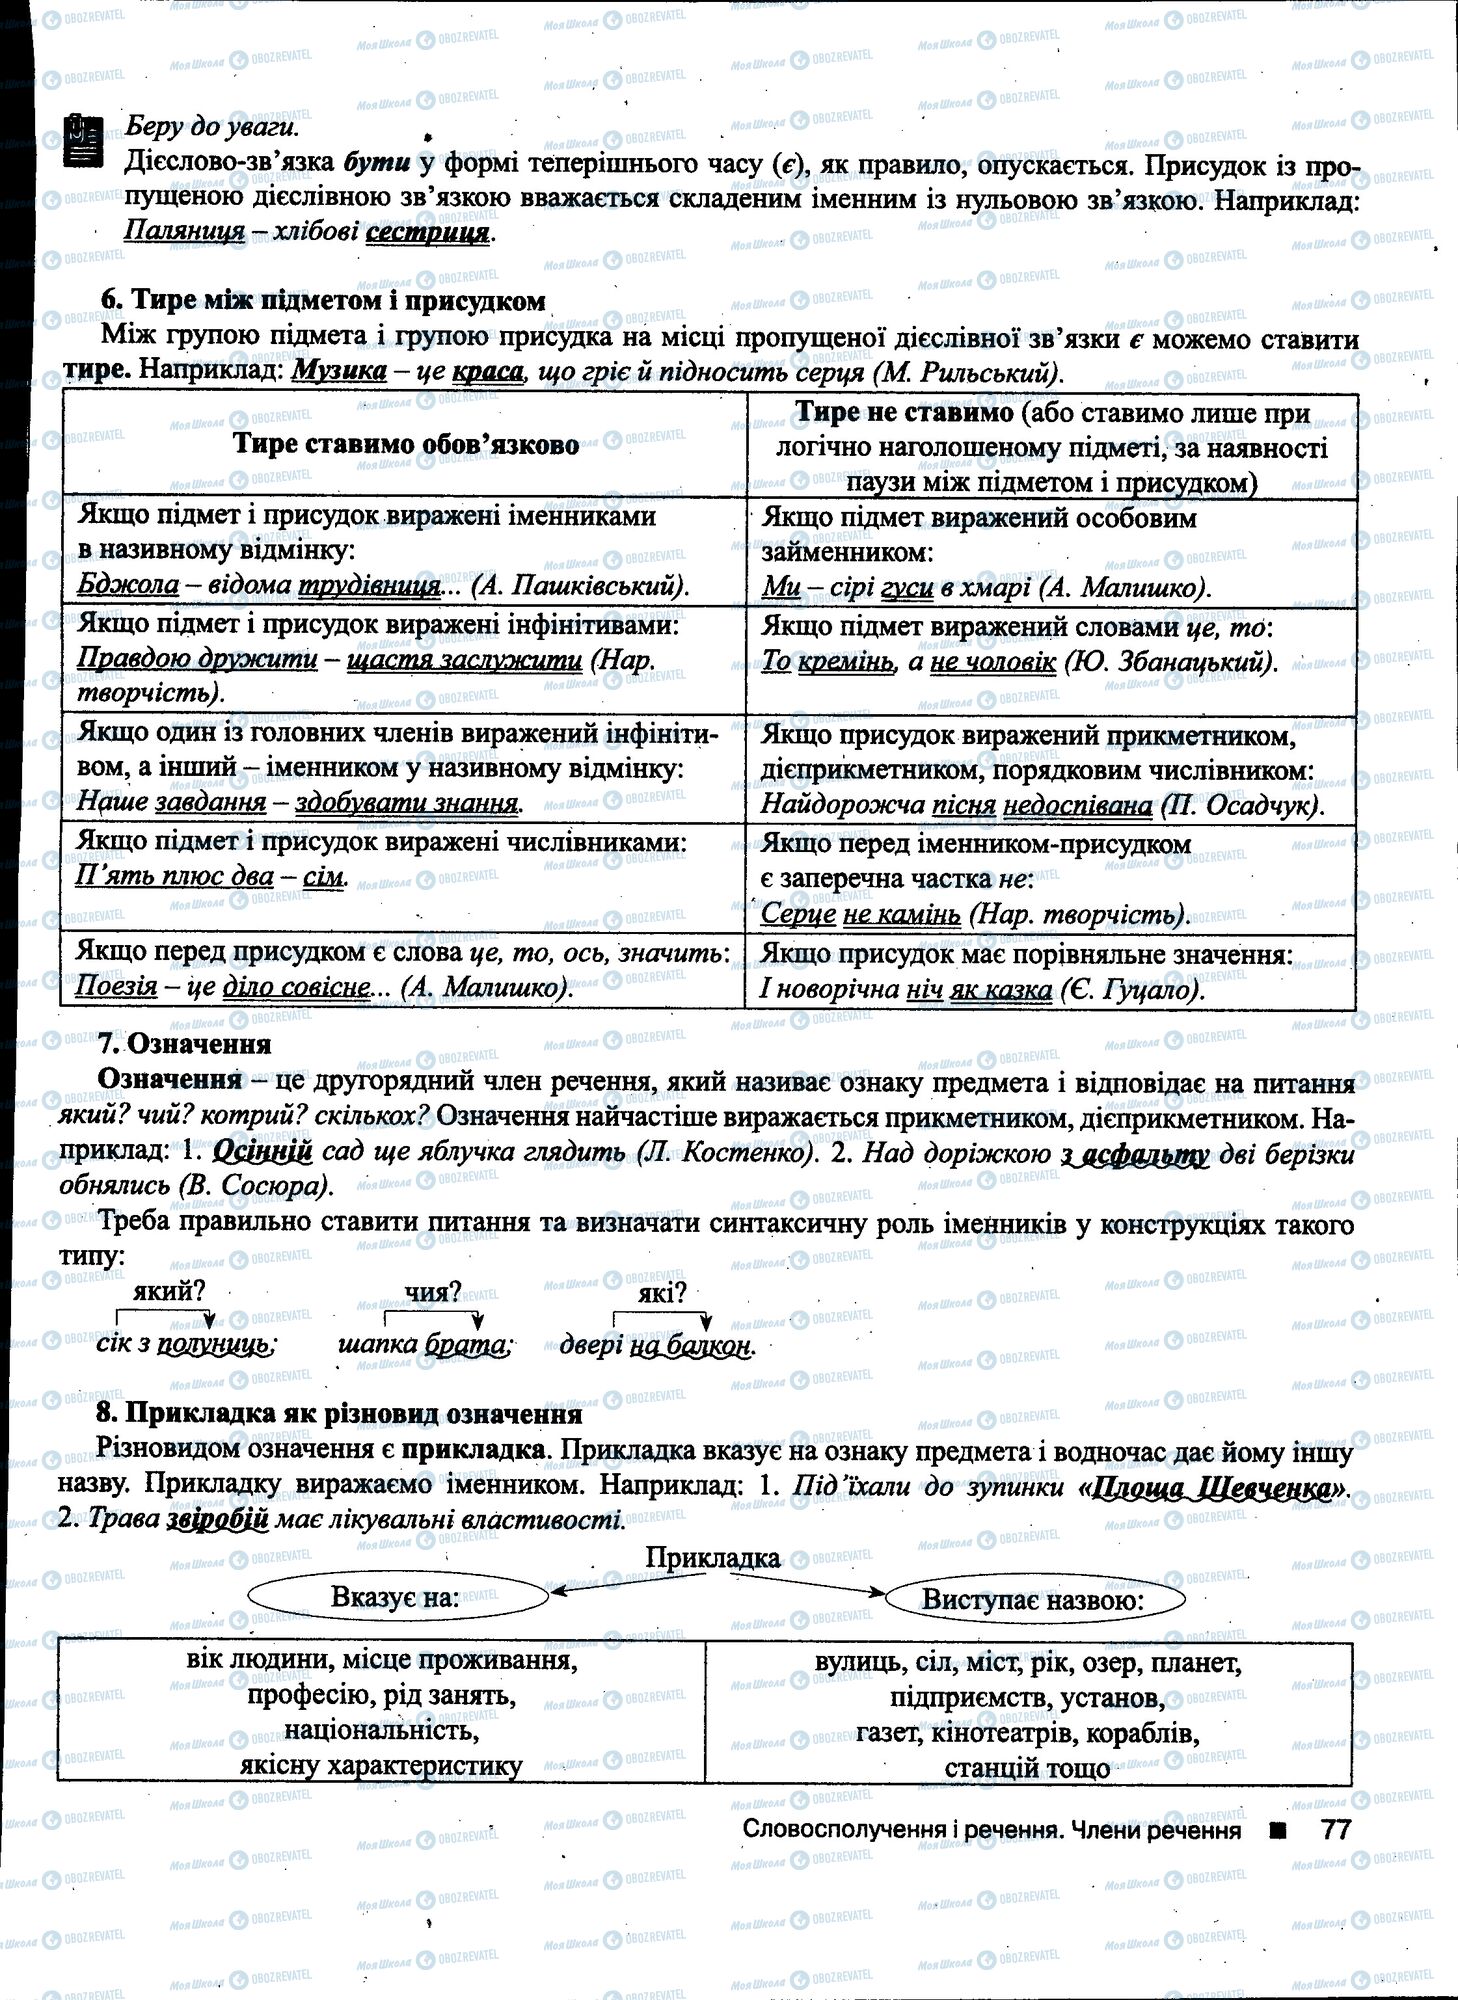 ДПА Укр мова 11 класс страница 077